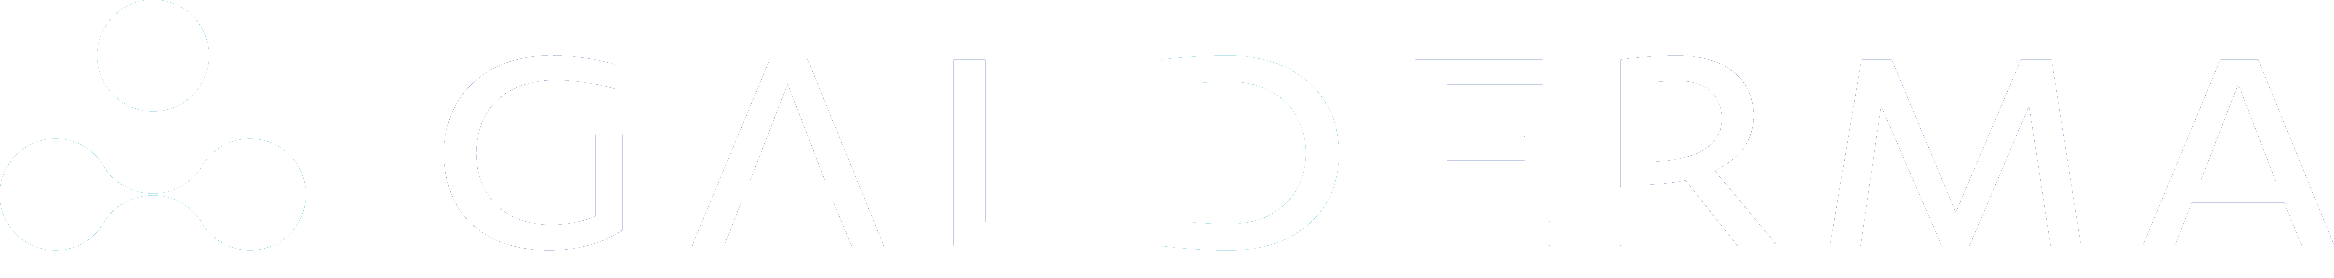 logo galderma rectangular blanco